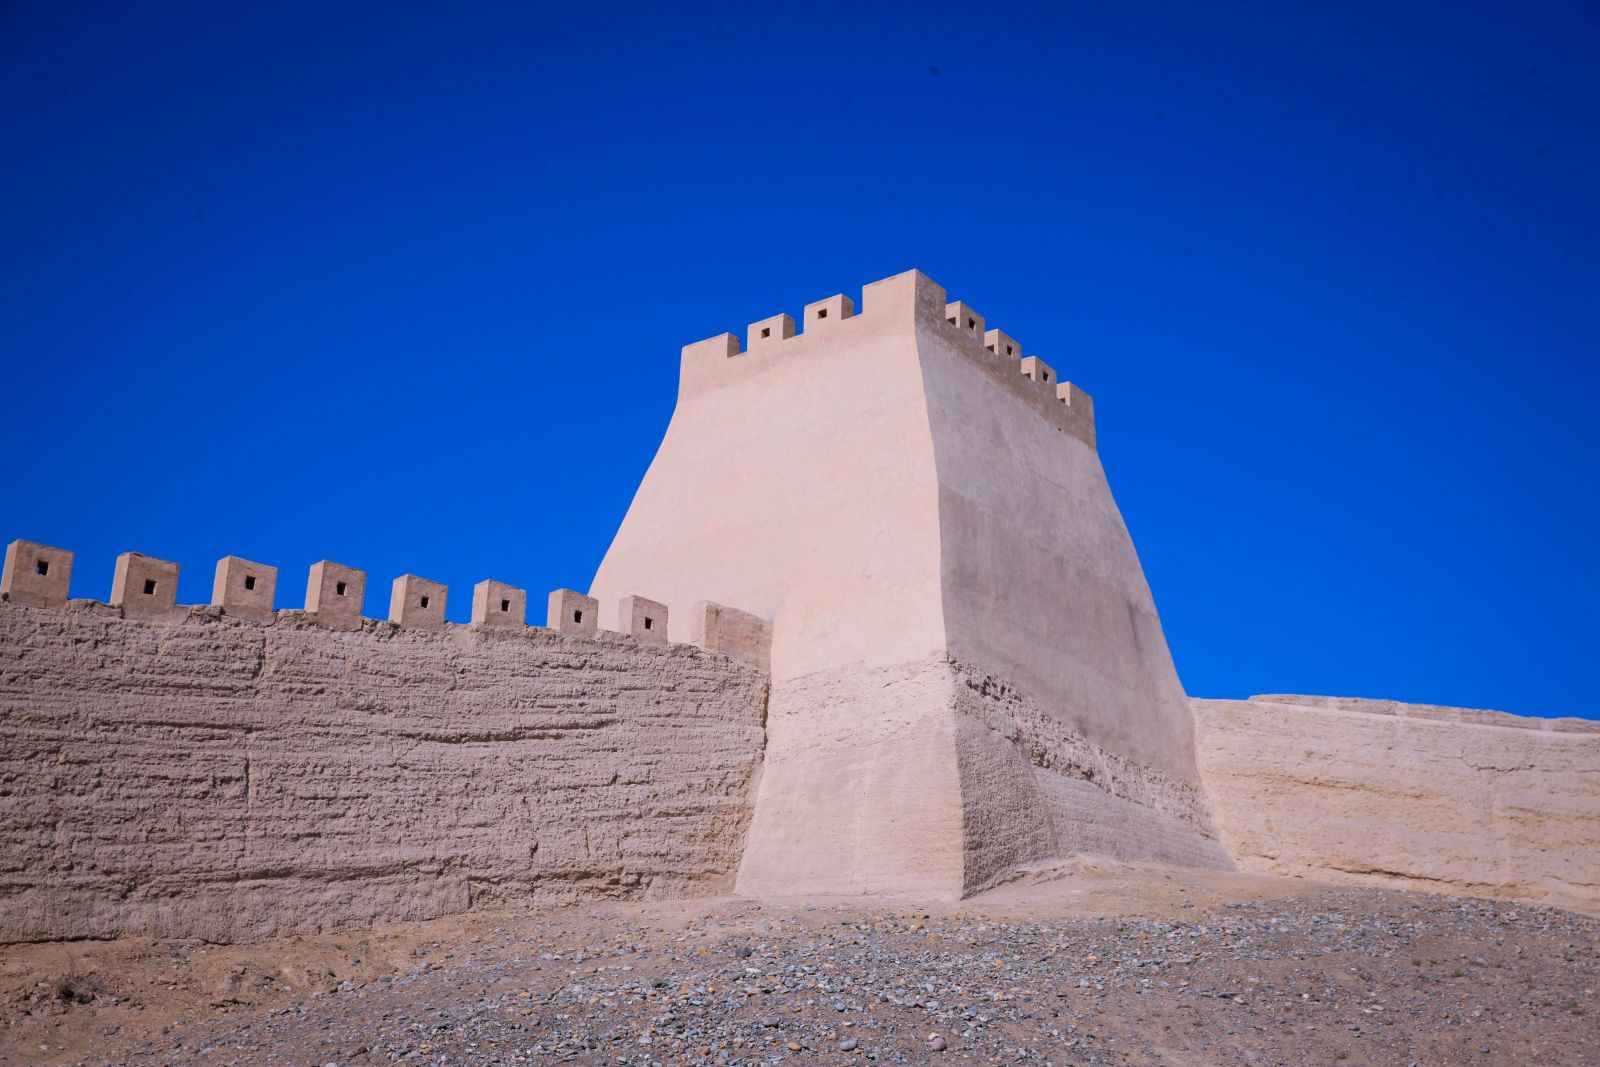 Gia Dục Quan bao gồm ba tuyến phòng thủ: Thành nội, thành ngoại và các hào nước. Cứ tại mỗi góc của cửa ải sẽ có một tháp canh. Ngôi thành xưa đã gần 700 năm tuổi với tháp canh hiên ngang giữa cát bụi sa mạc. 